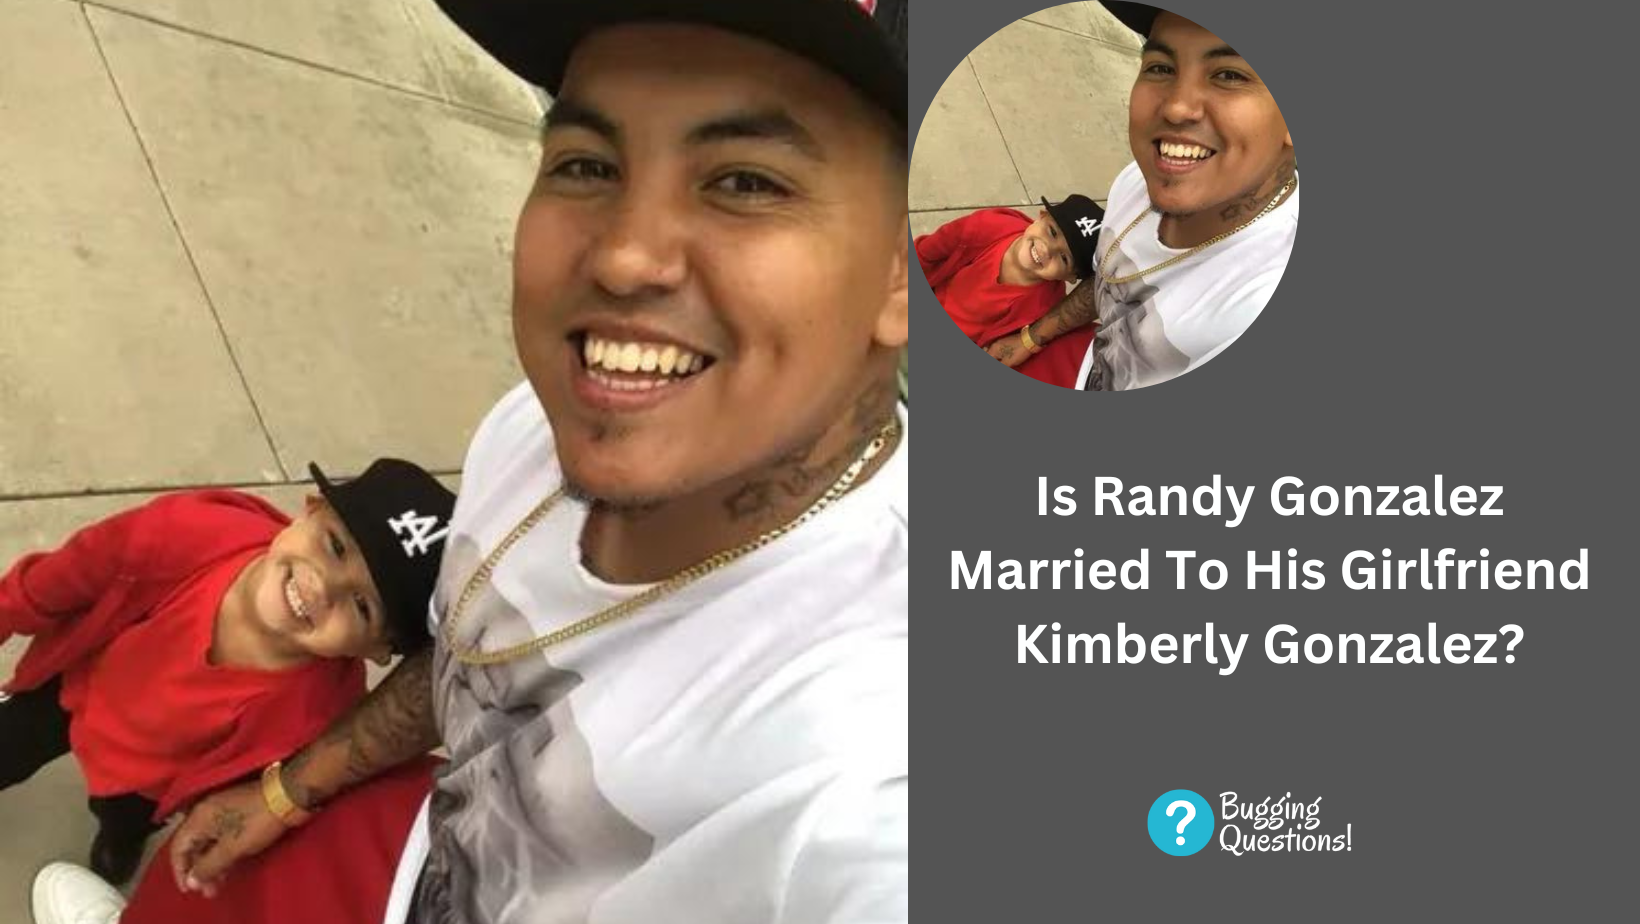 Is Randy Gonzalez Married To His Girlfriend Kimberly Gonzalez?